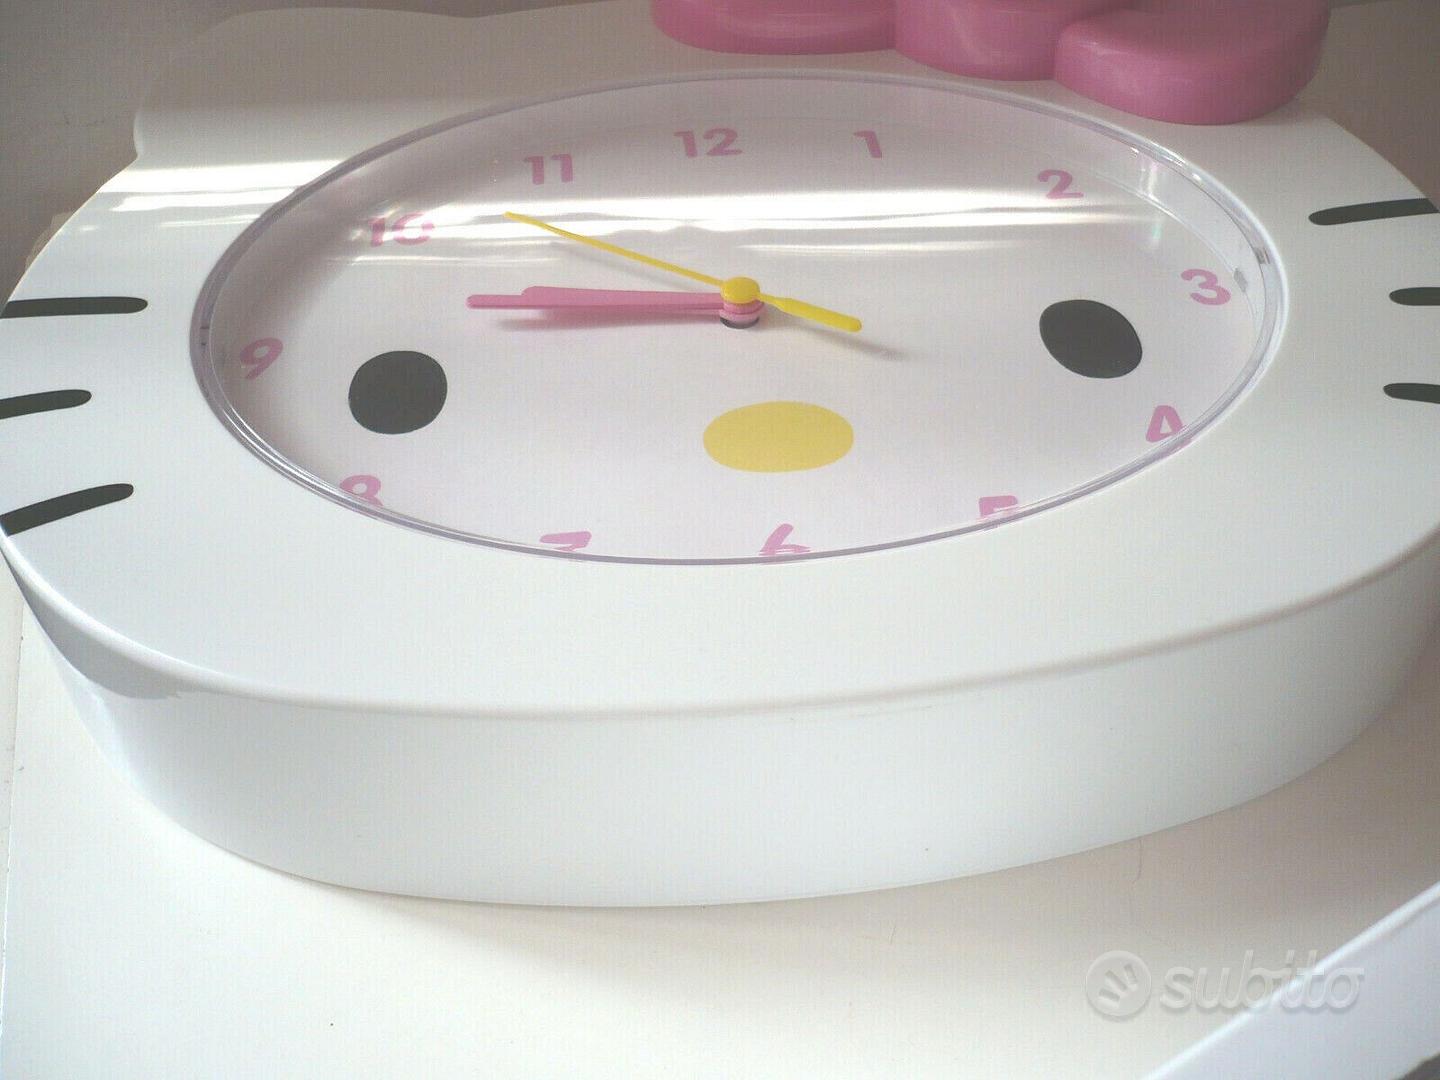 Hello Kitty Face Clock